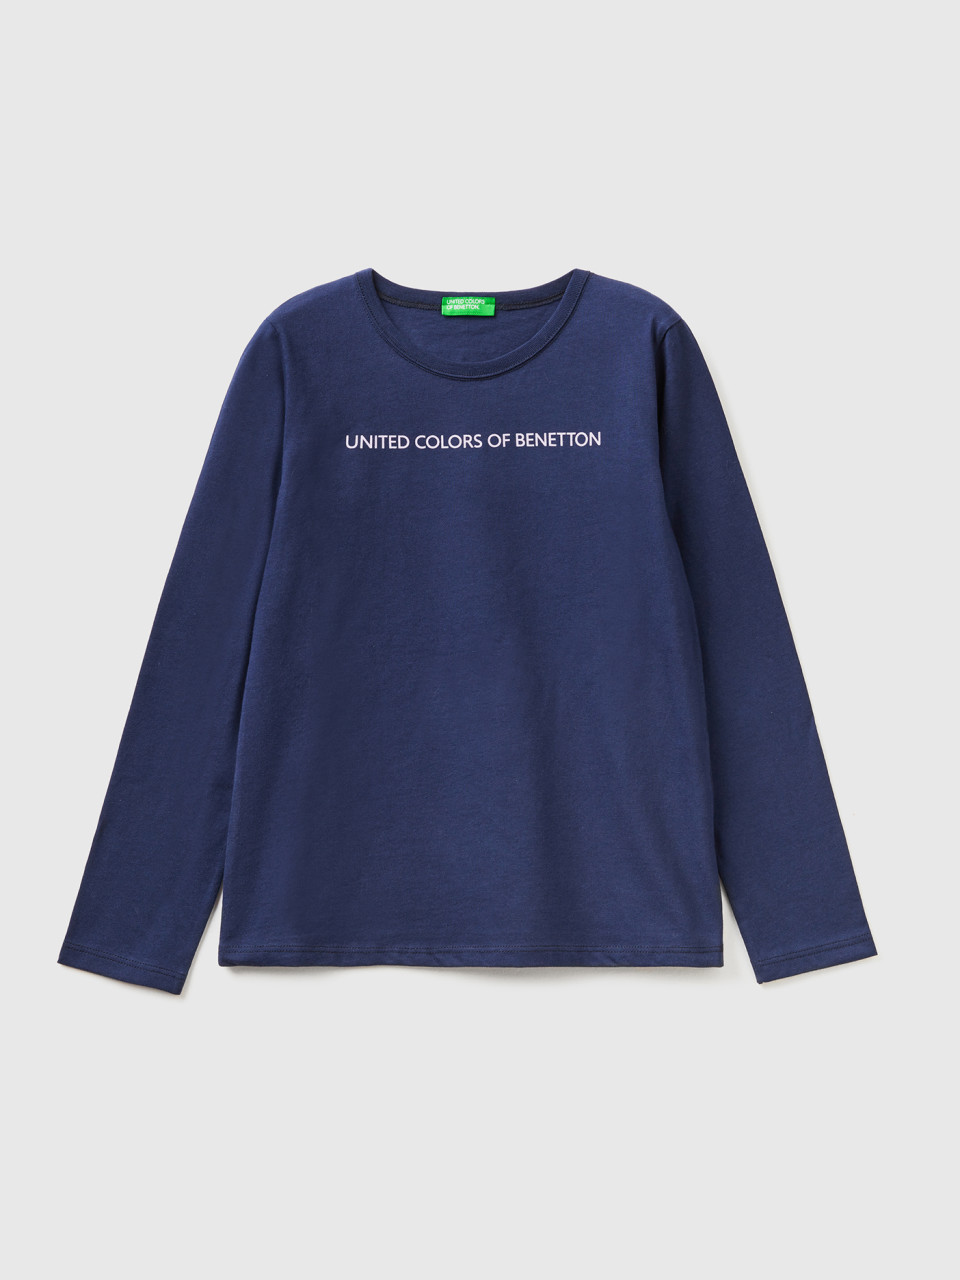 Benetton, Long Sleeve 100% Cotton T-shirt, Dark Blue, Kids